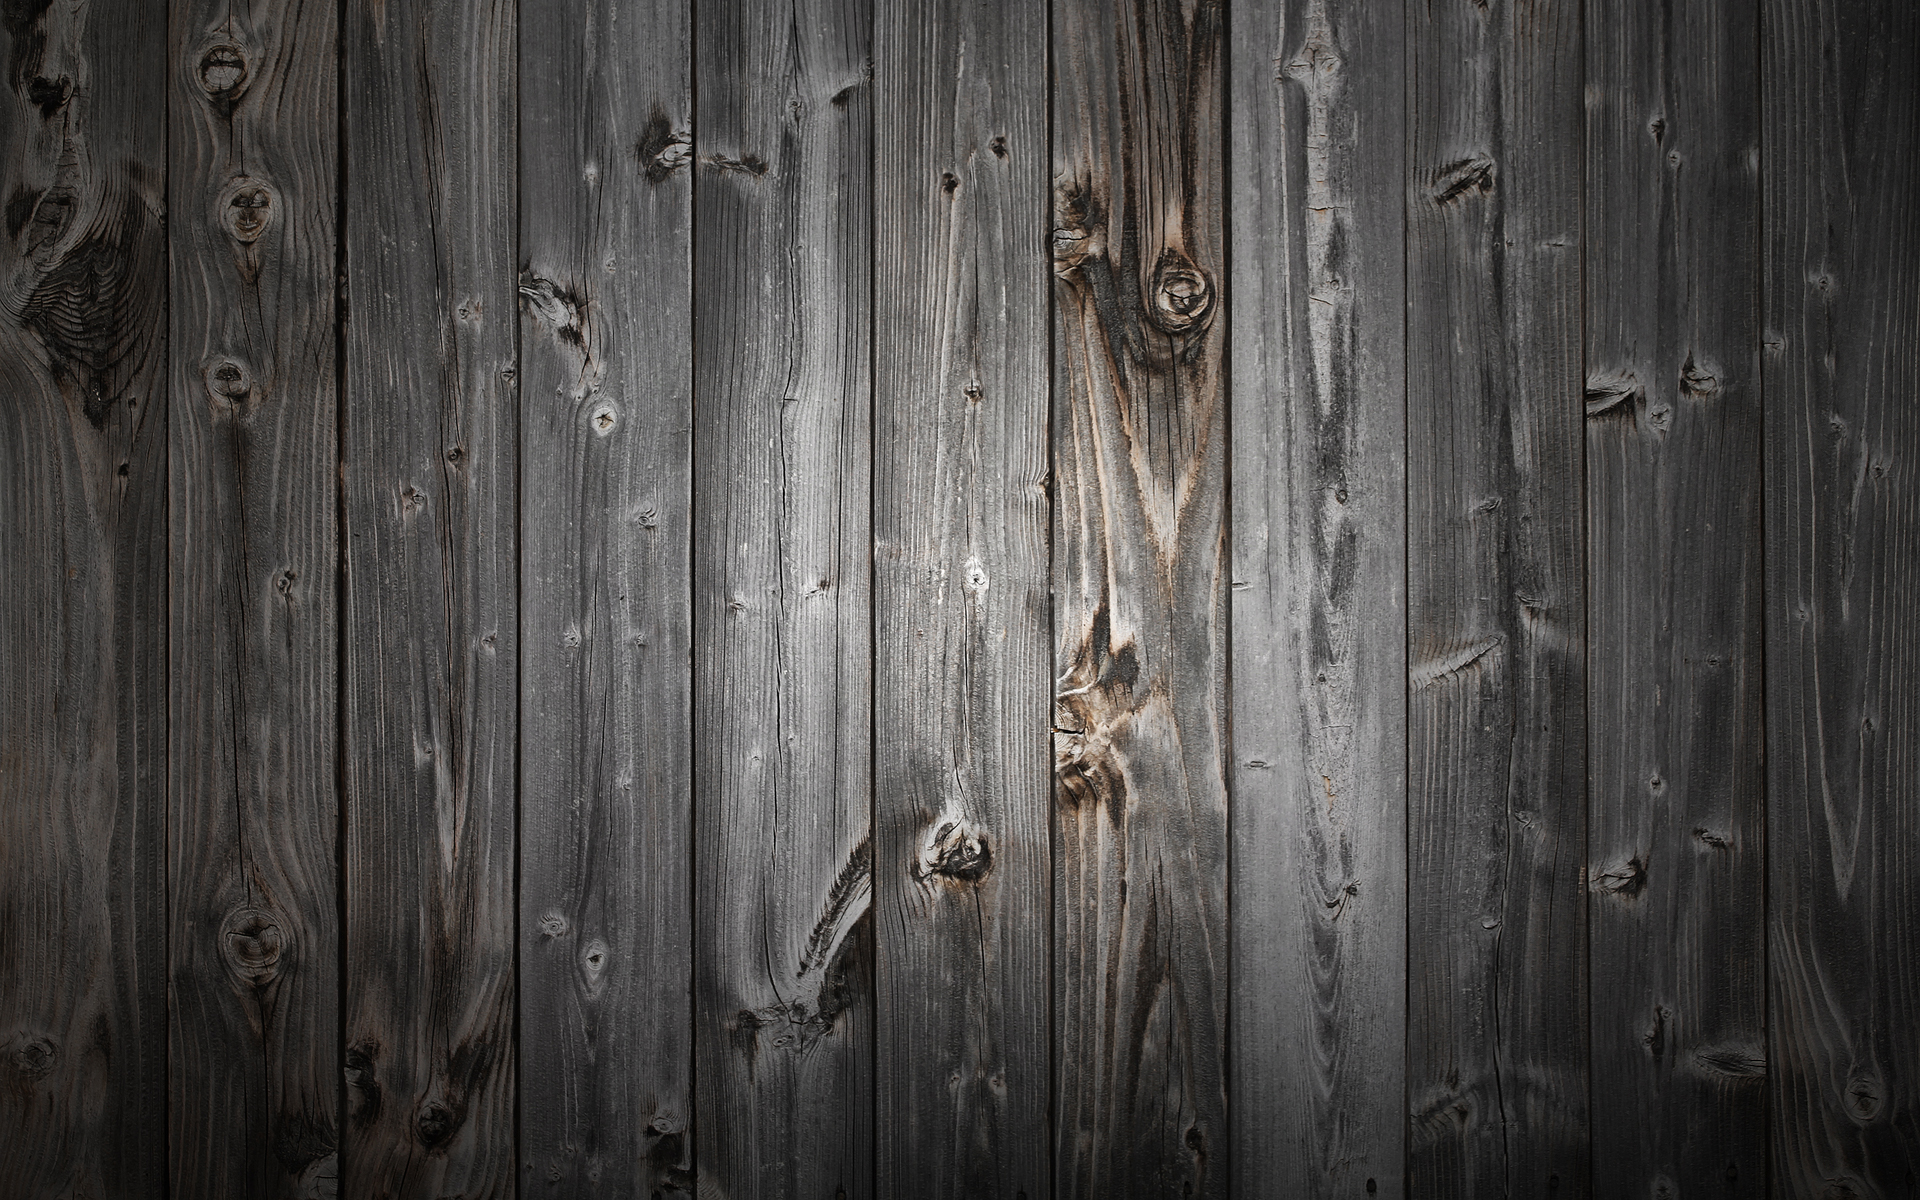 49+] Black Wood Wallpaper HD - WallpaperSafari